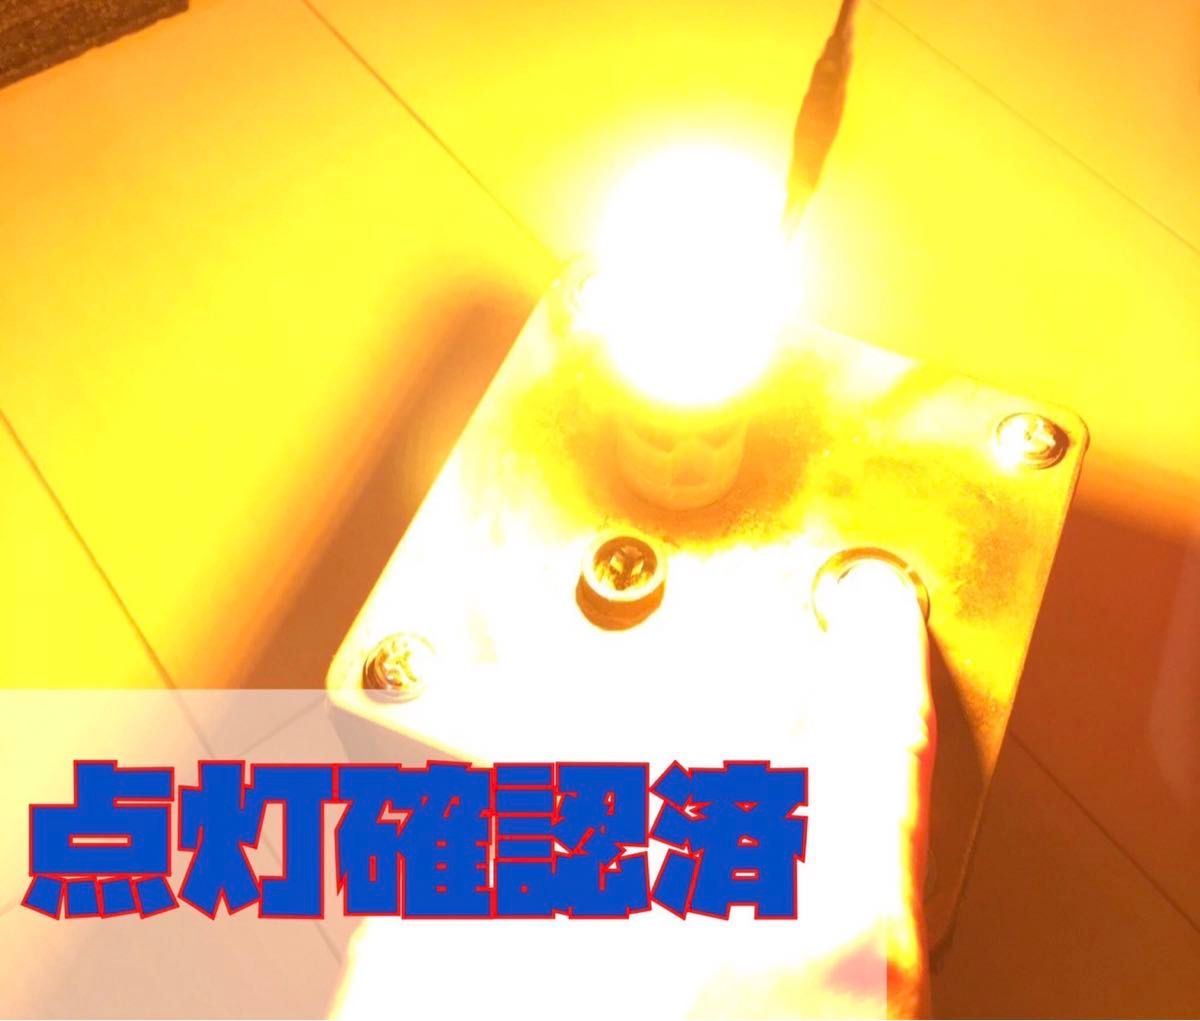 爆光新品 LED T20 ウインカー オレンジ色ハイフラ防止抵抗内蔵 ピンチ部違い対応 4個セット アンバー 12v LEDバルブ